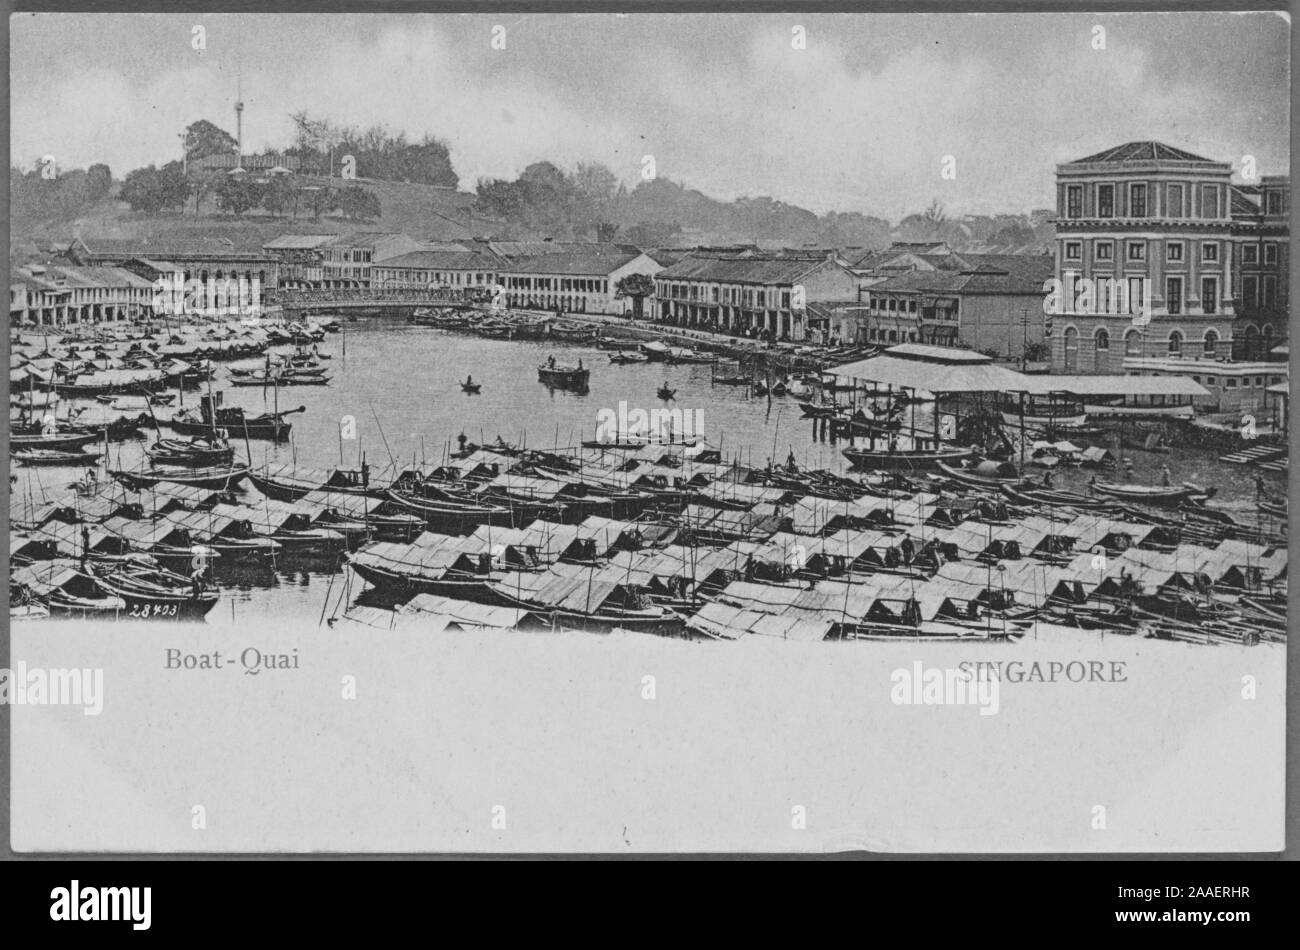 Carte postale gravée d'une vue d'ensemble de bateaux sampan à Boat Quay, la partie la plus animée du port de Singapour, publié par G.R, 1762. Lambert et Co. de la New York Public Library. () Banque D'Images